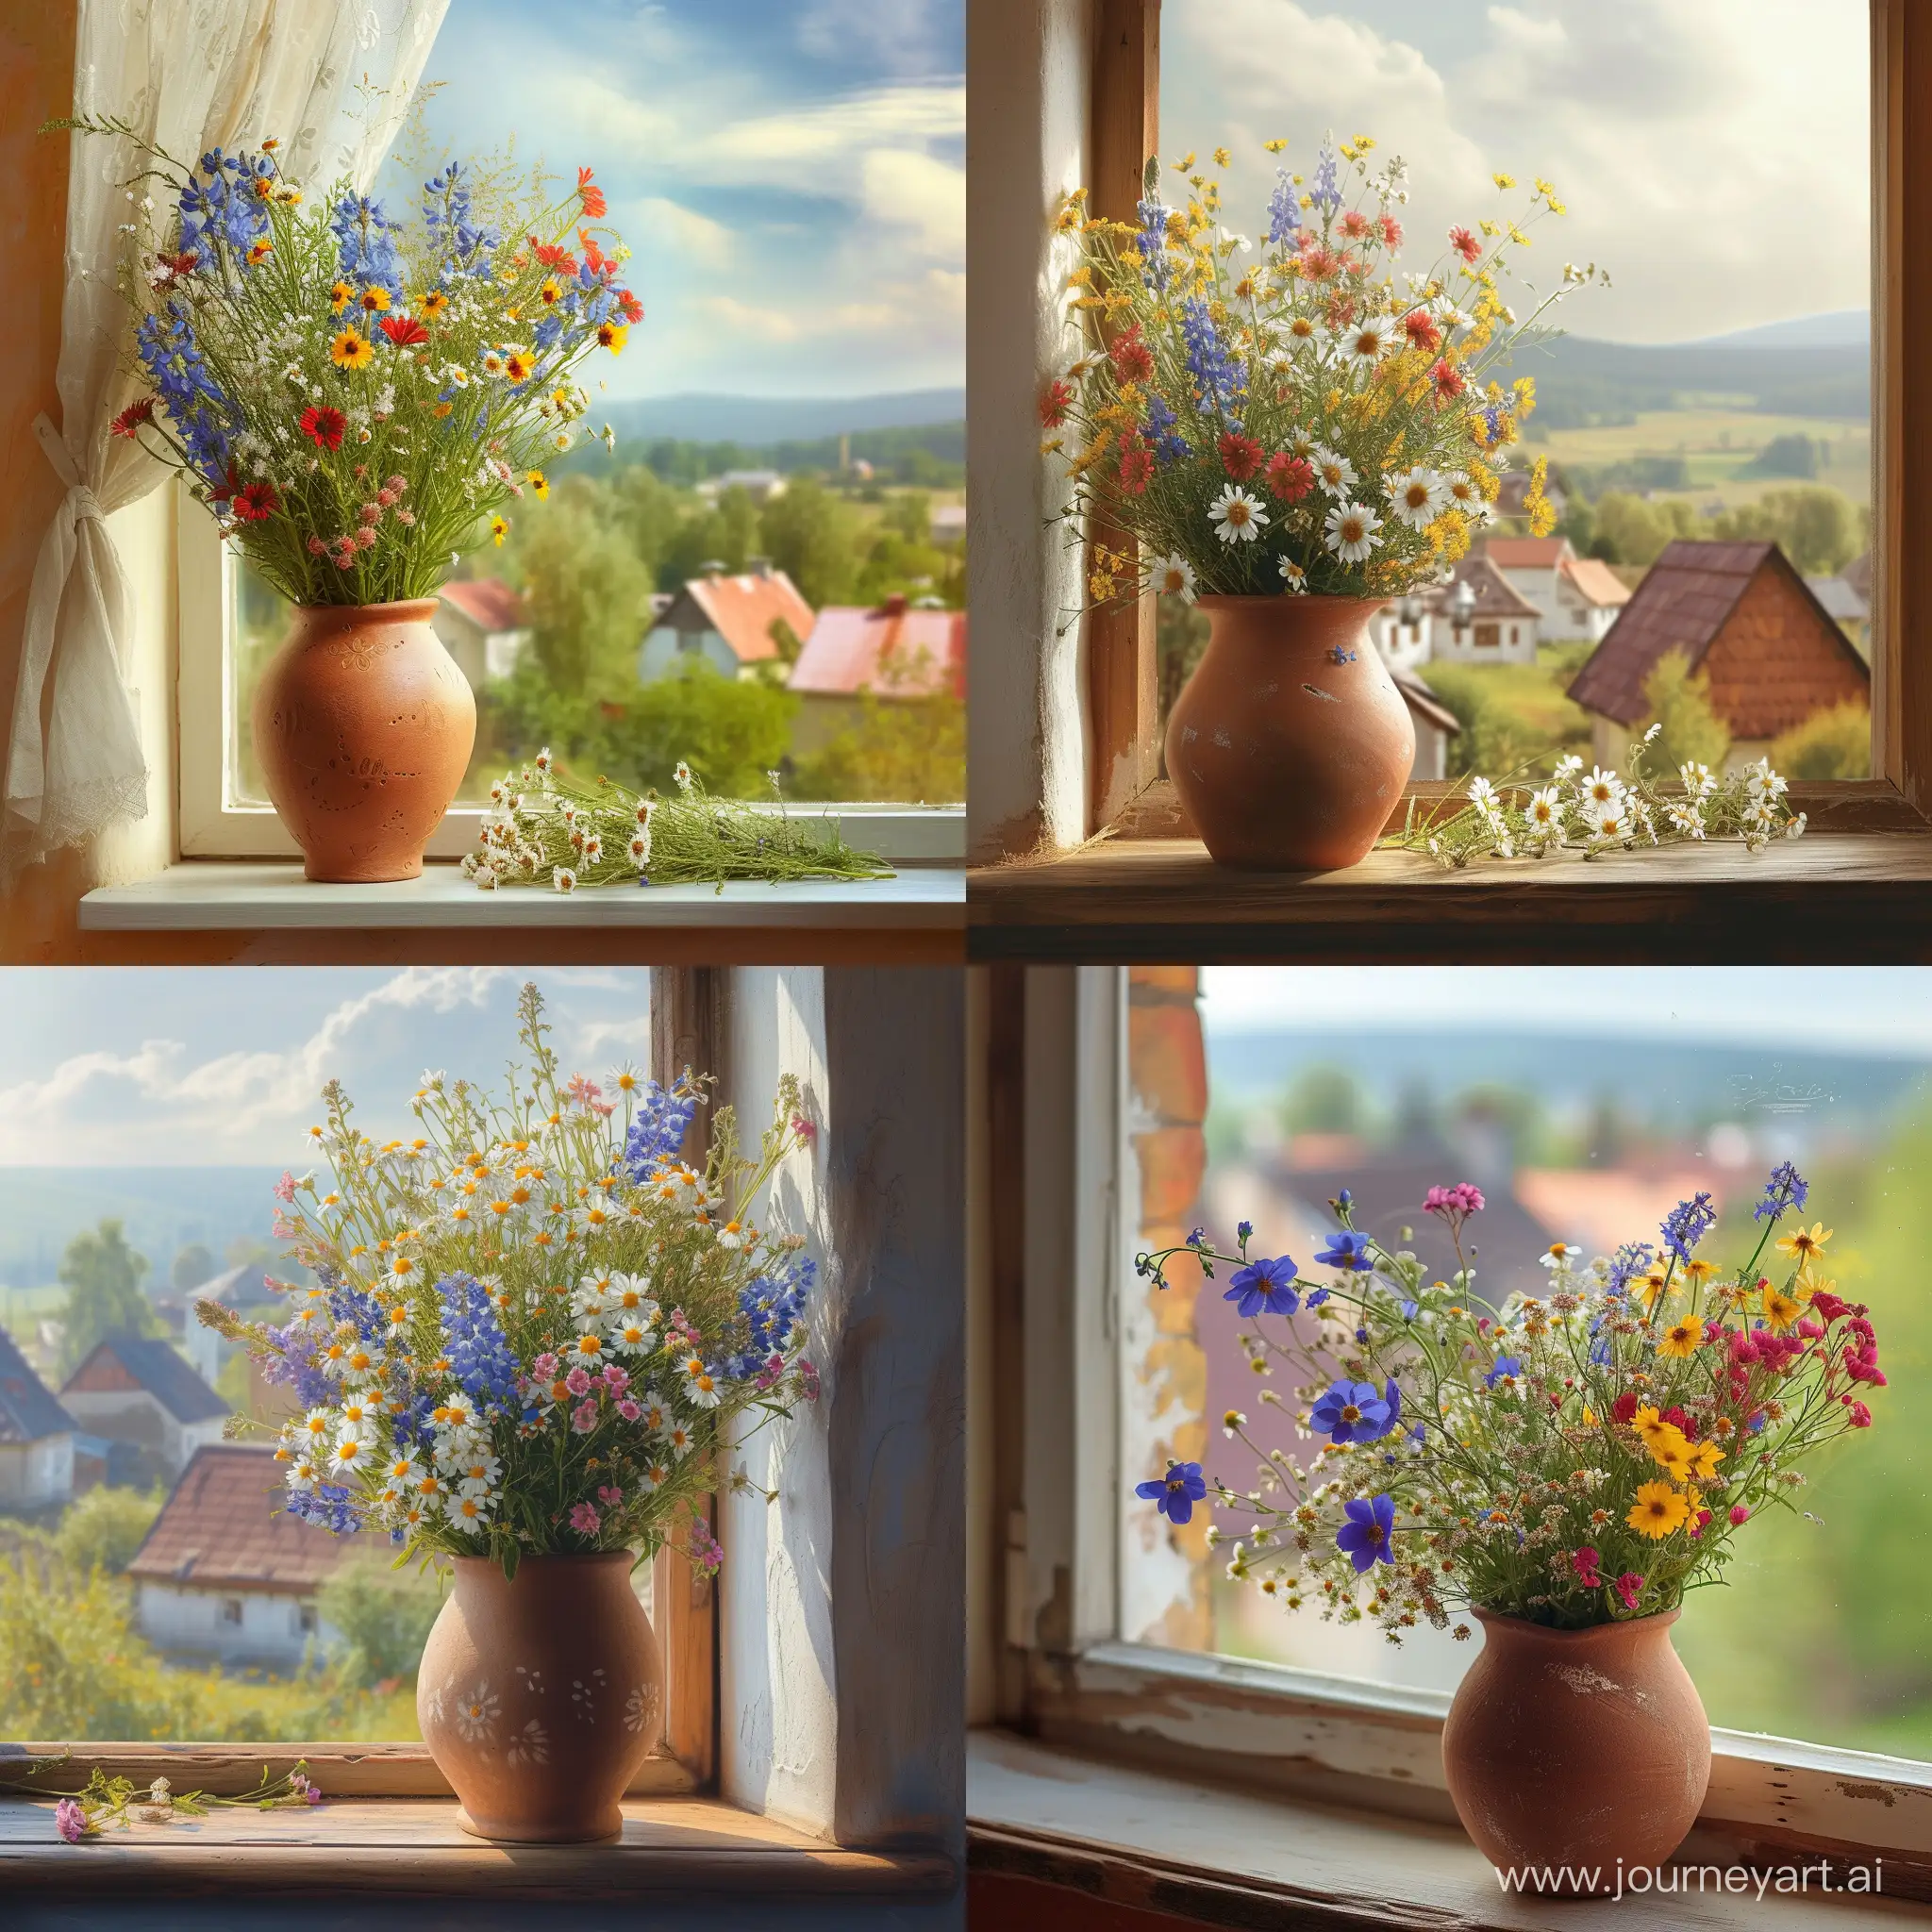 Красивые полевые цветы в глиняной вазе на подоконнике, из окна красивый вид на деревню